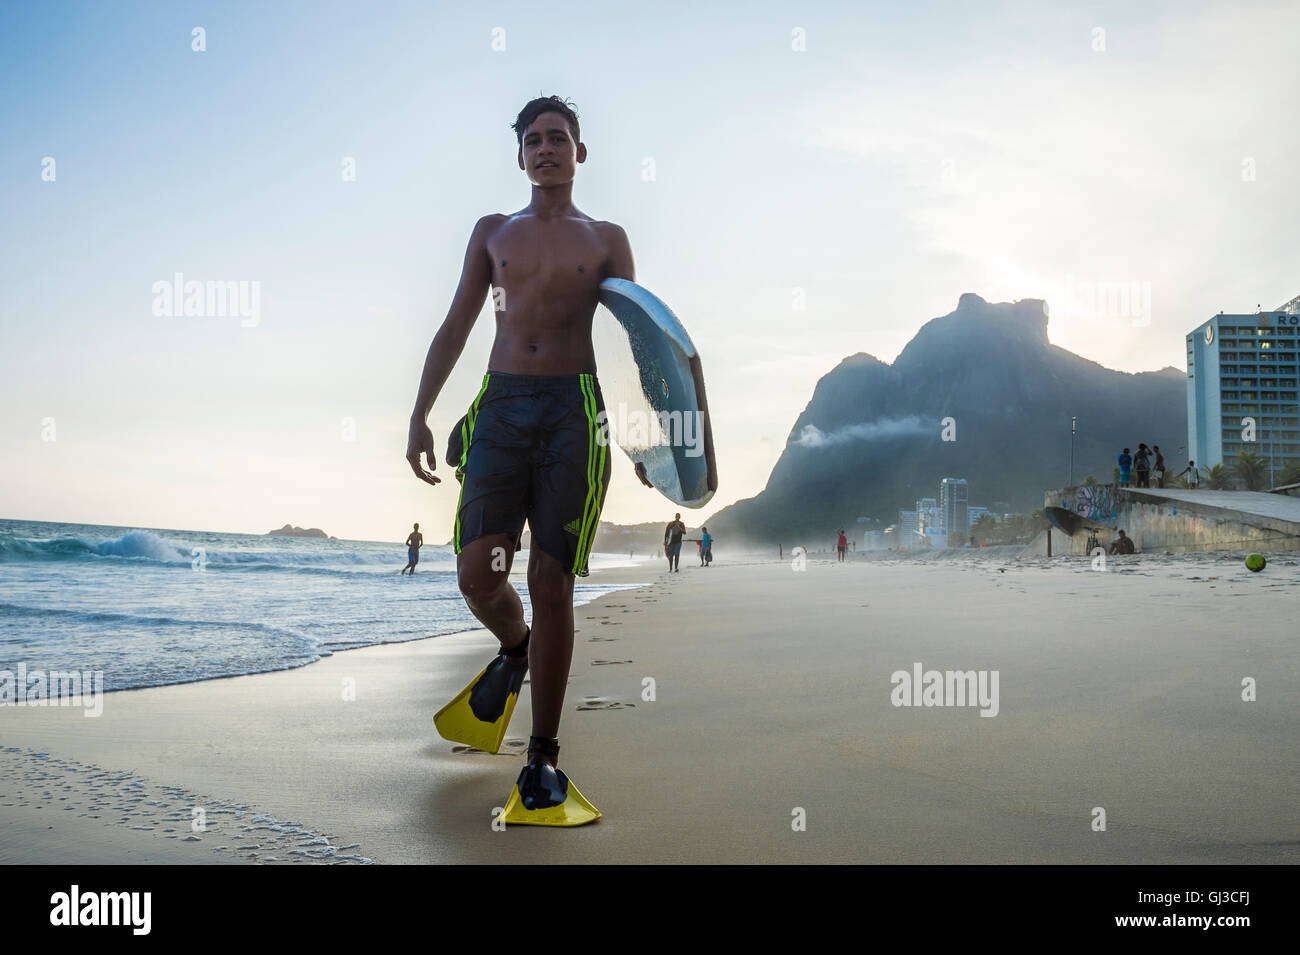 RIO DE JANEIRO - 8. März 2016: Junge Carioca brasilianischen Bodyboarder betritt die Wellen am Strand von São Conrado. Stockfoto